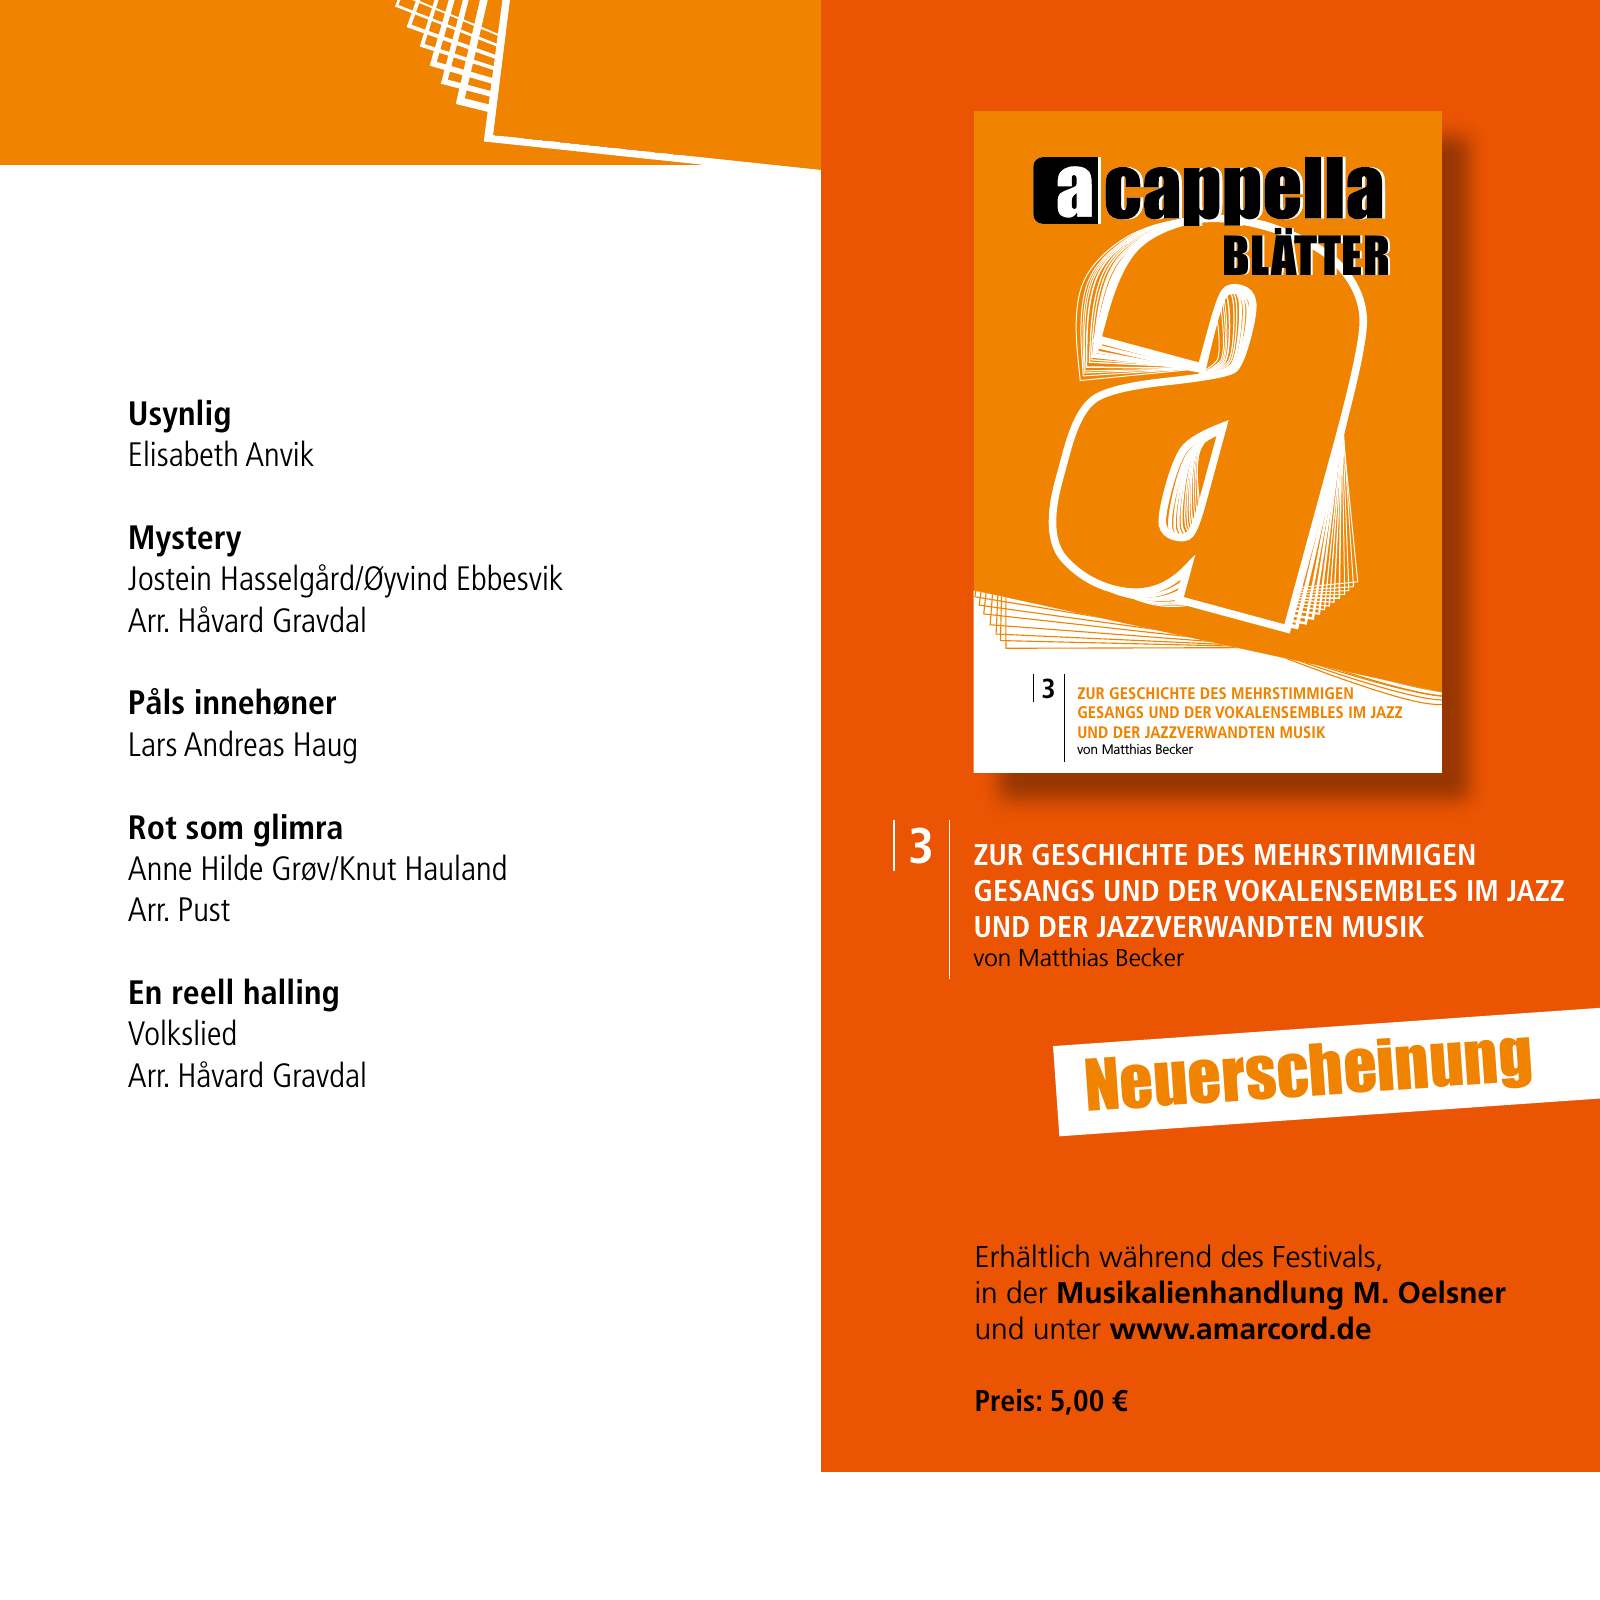 Vorschau E-Paper Festival a cappella 2015 Seite 59